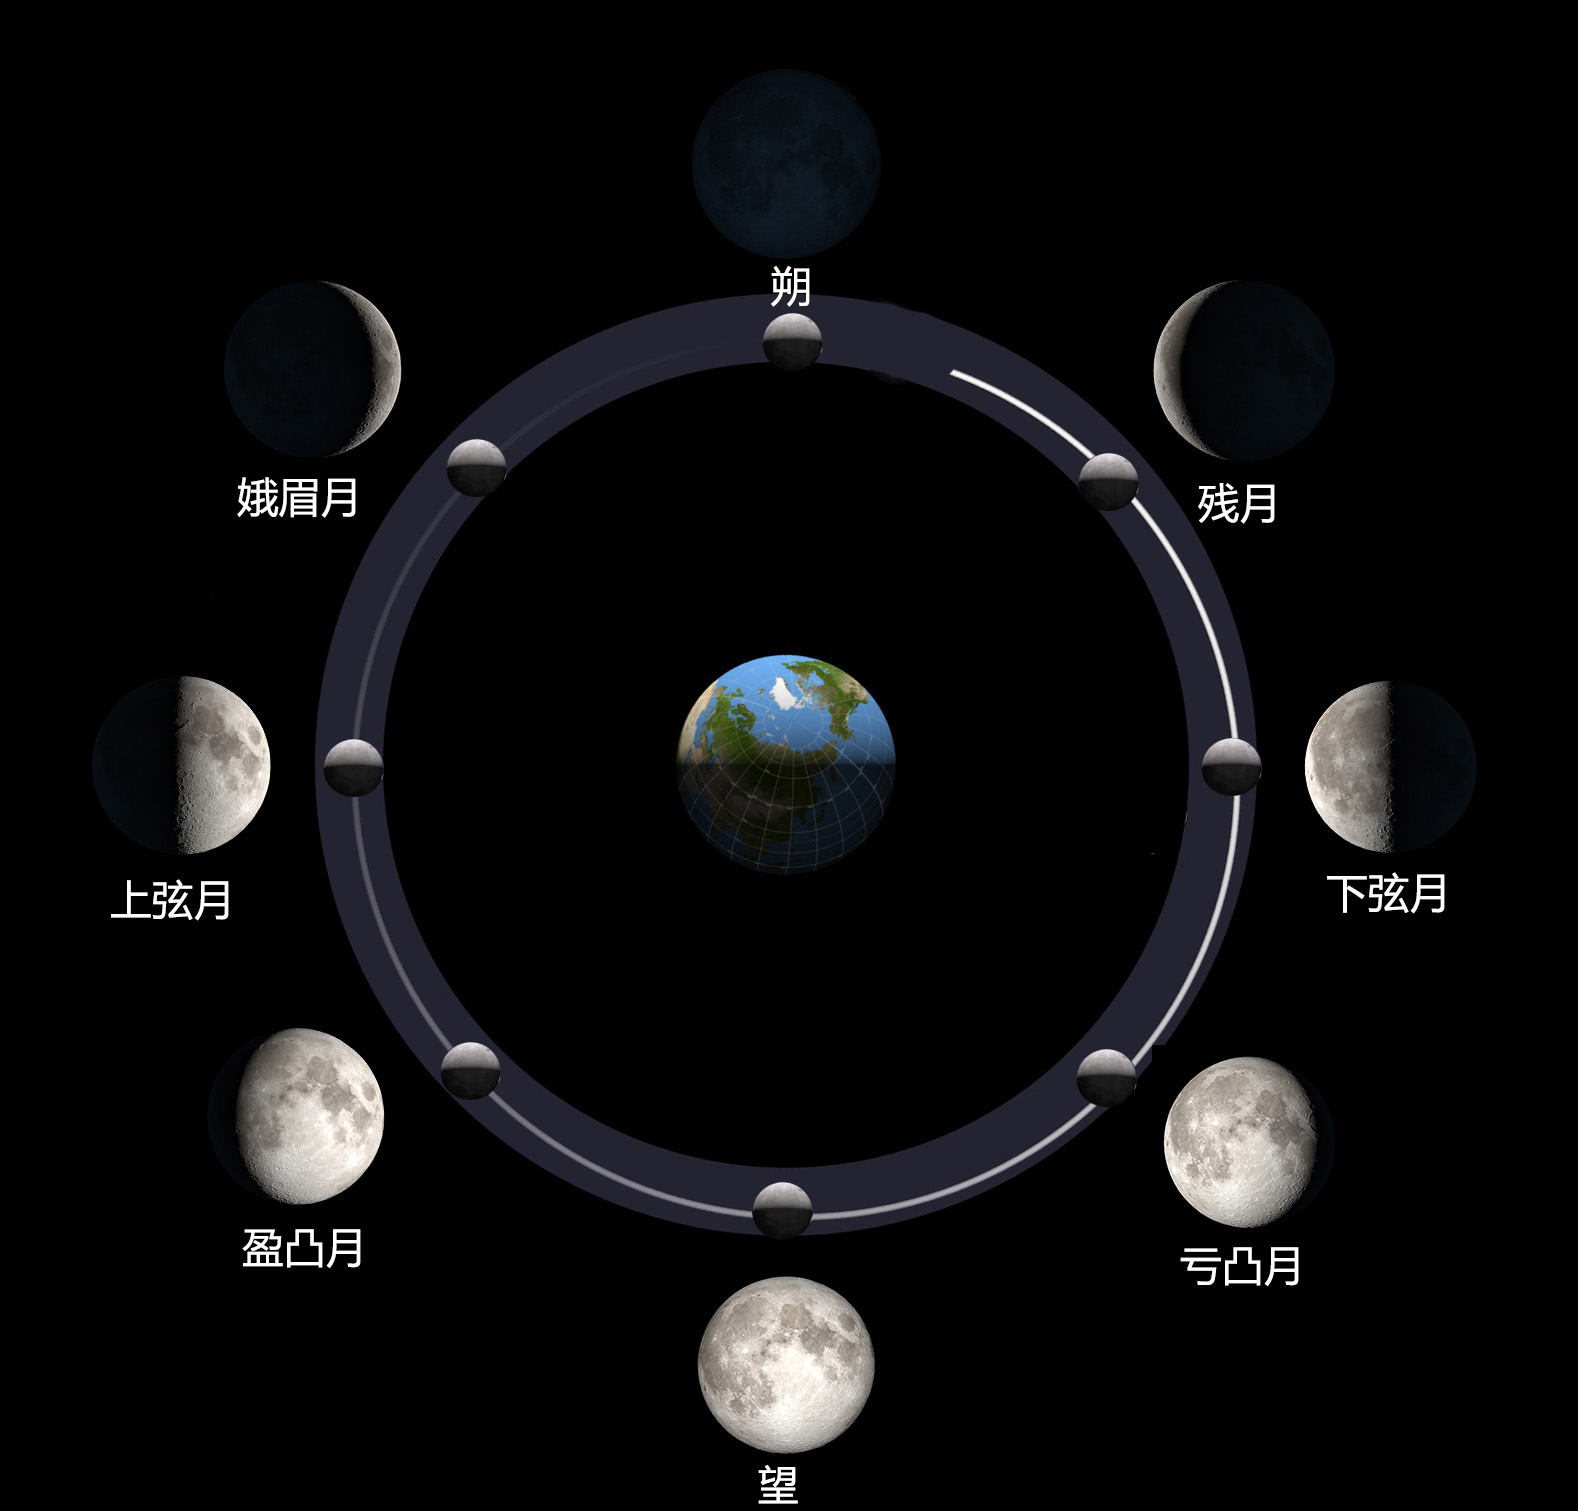 3天而朔望月的变化周期是29.5天.